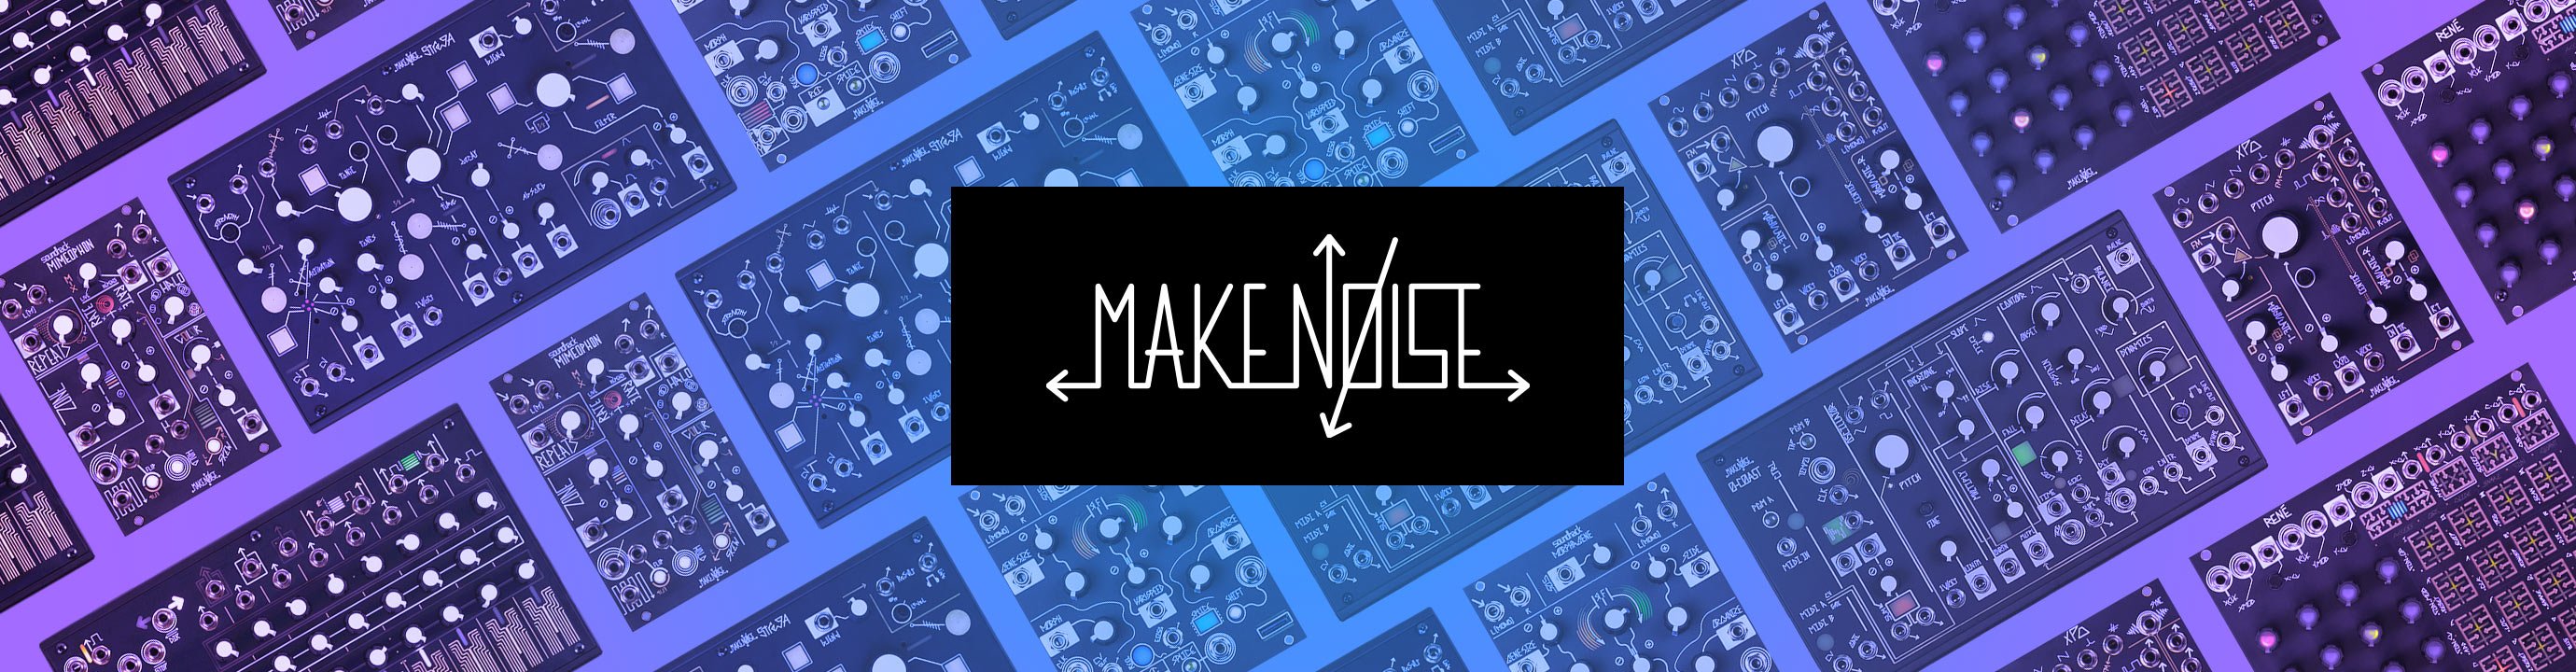 Make Noise Banner